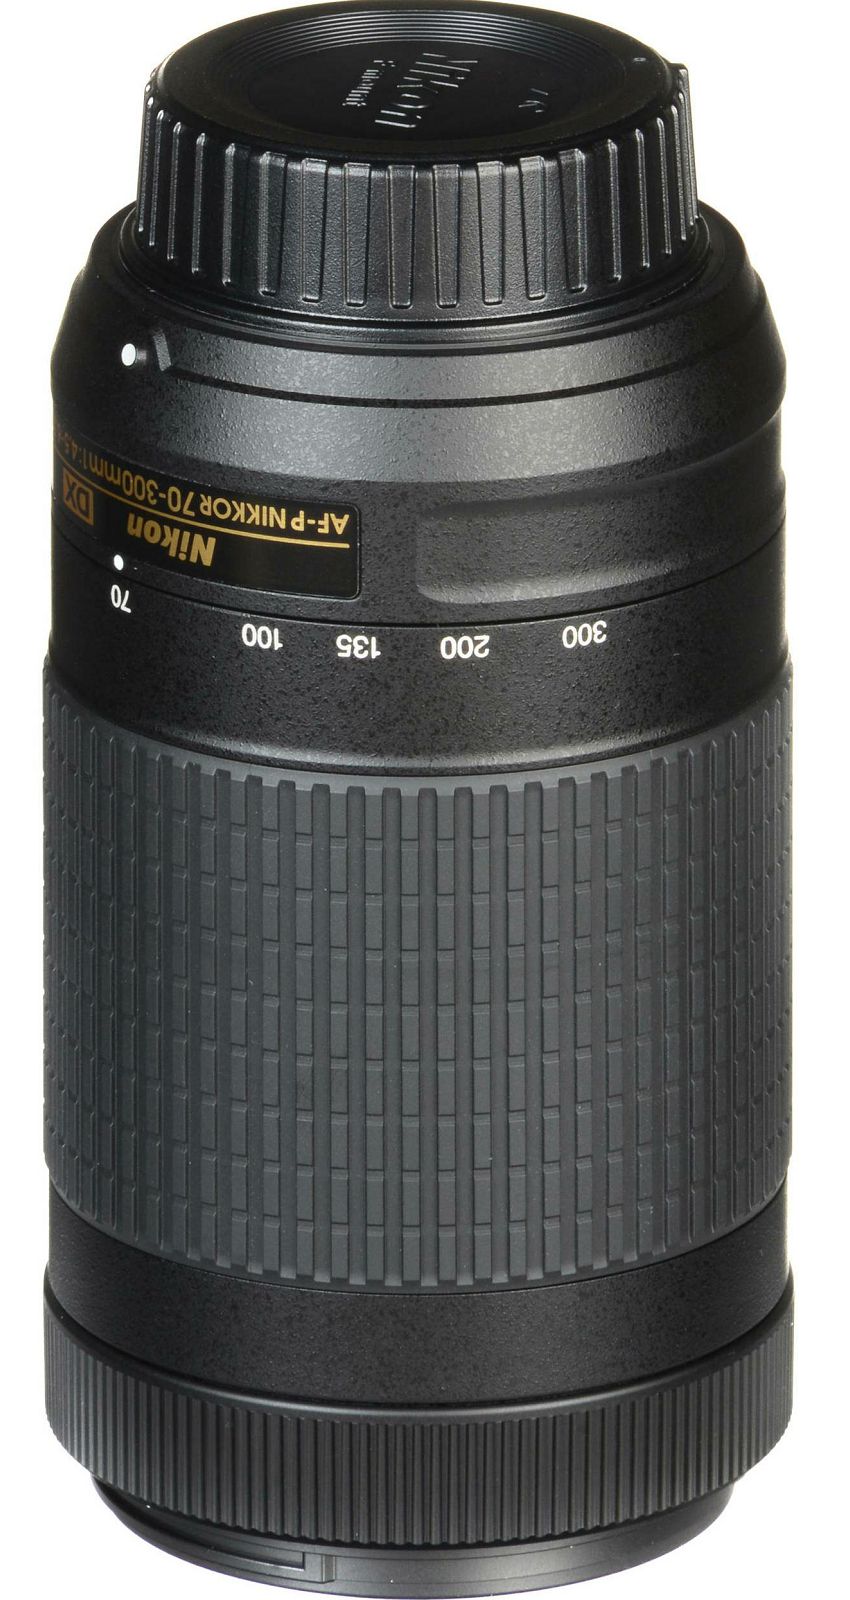 Nikon AF-P 70-300mm f/4.5-6.3G ED DX telefoto objektiv Nikkor 70-300 4.5-6.3 G (JAA828DA)